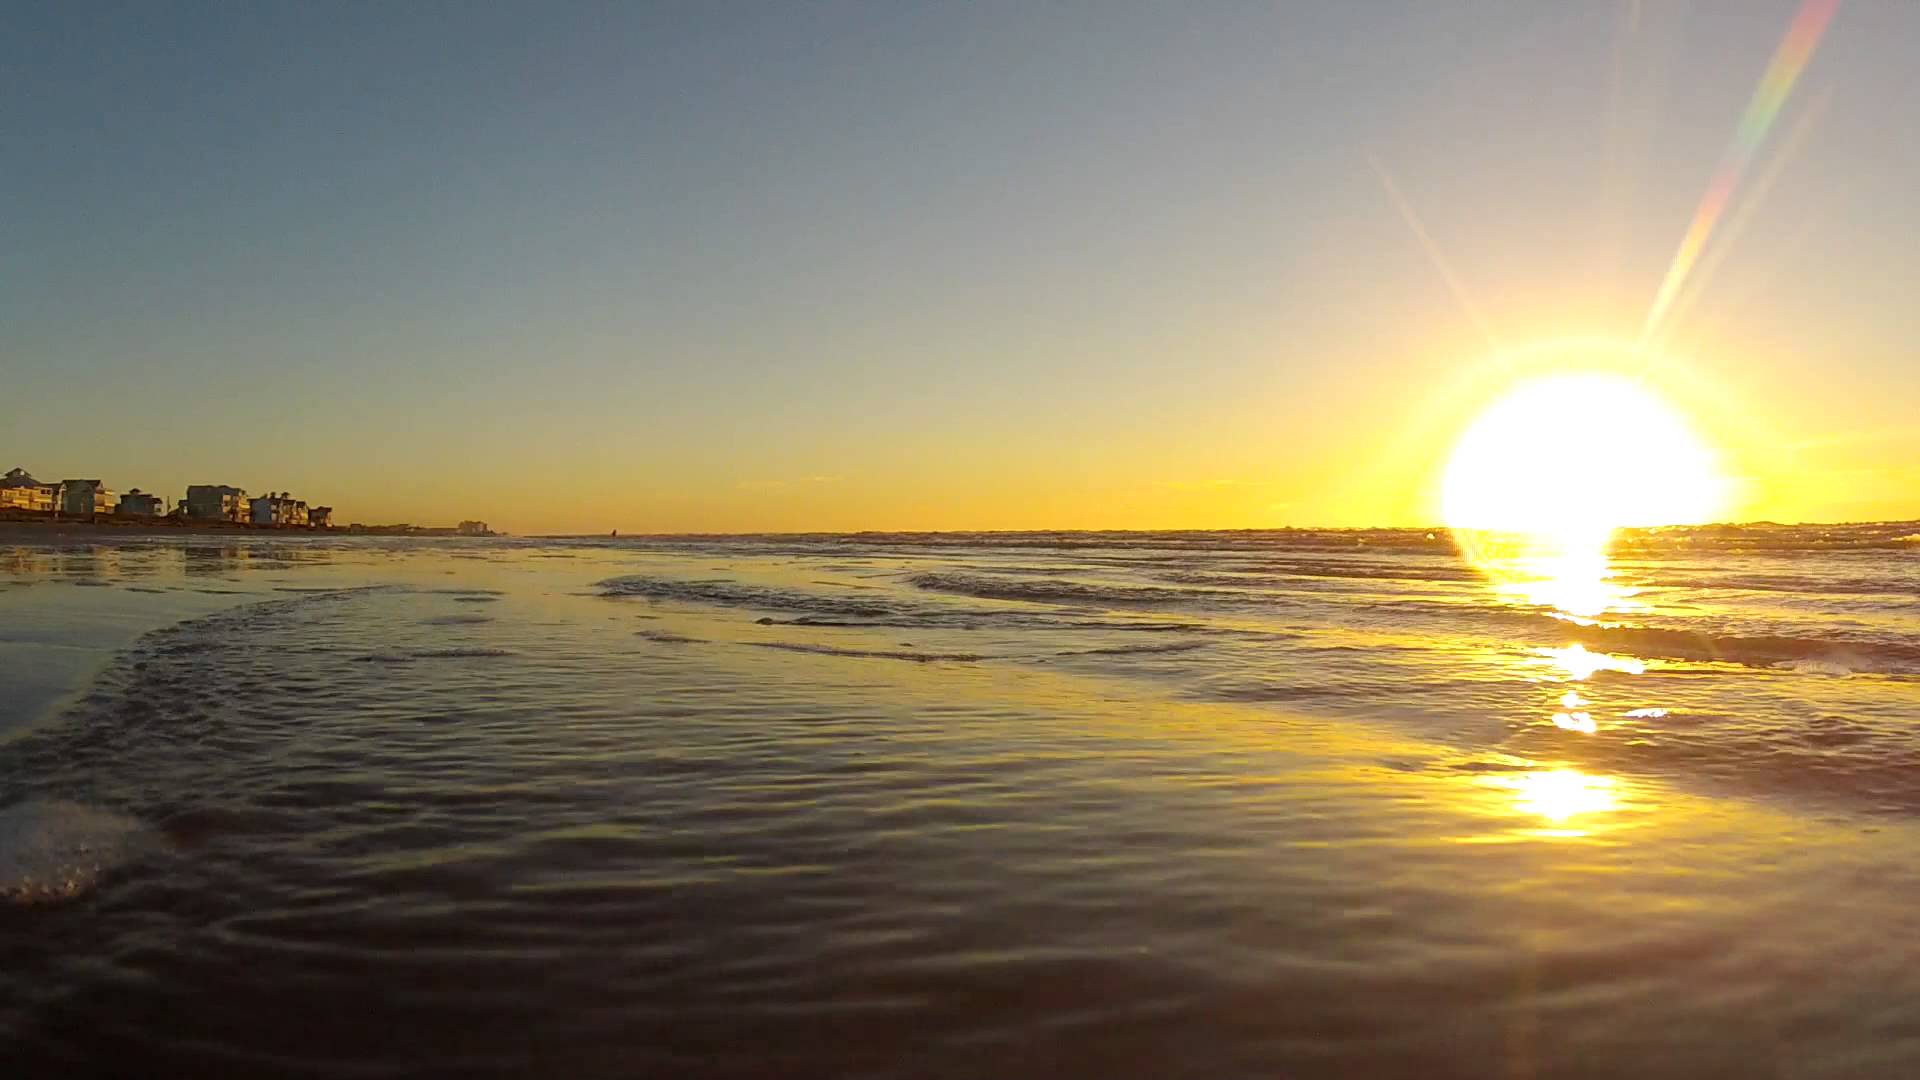 Sunrise on the Beach - YouTube